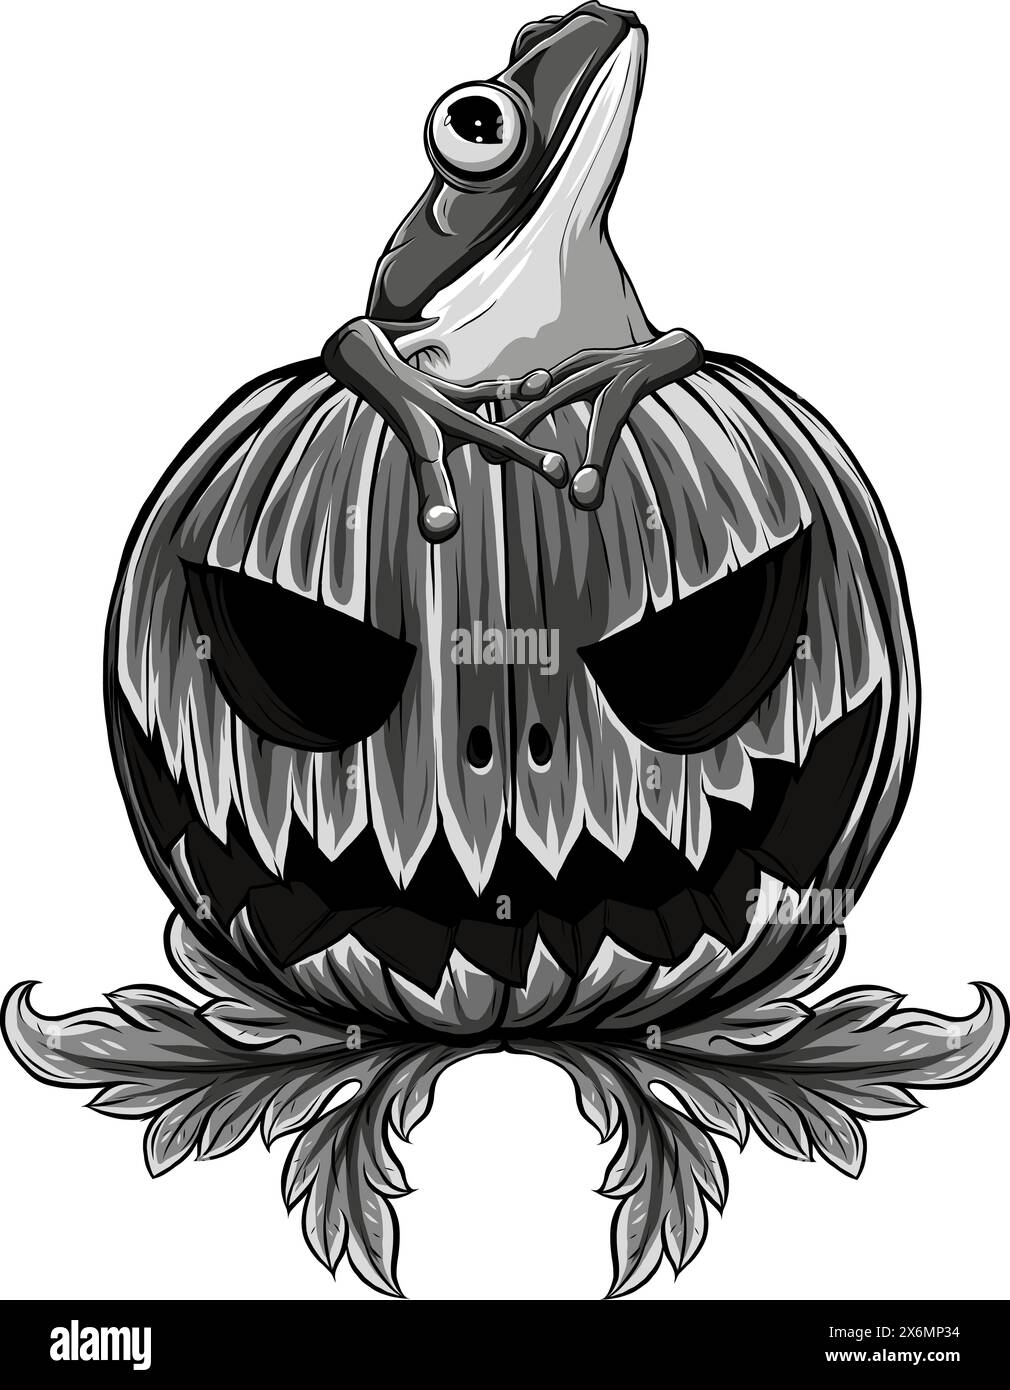 Illustration vectorielle de la citrouille d'Halloween monochrome avec grenouille assise Illustration de Vecteur